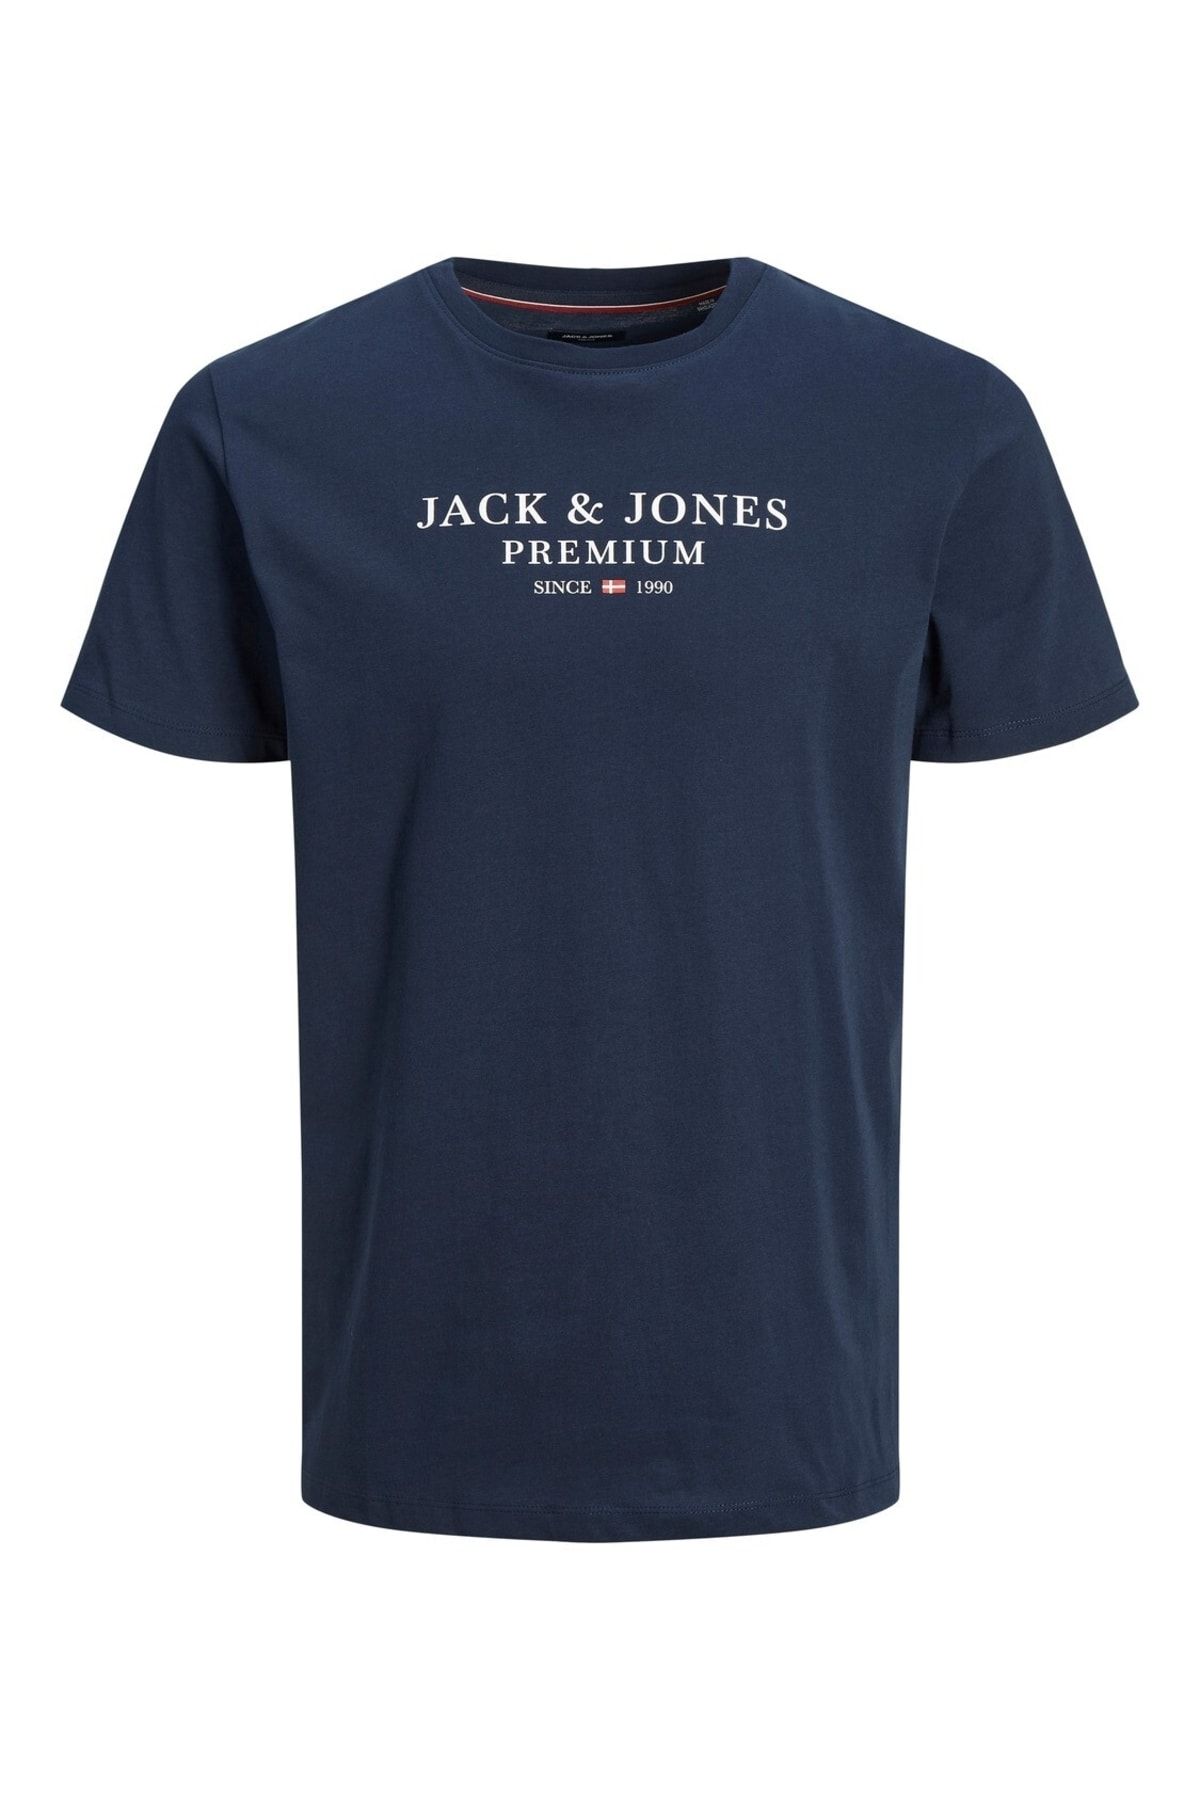 Jack & Jones Jack&jones Bisiklet Yaka Yazılı Kısa Kollu Lacivert Erkek T-shirt 12217167